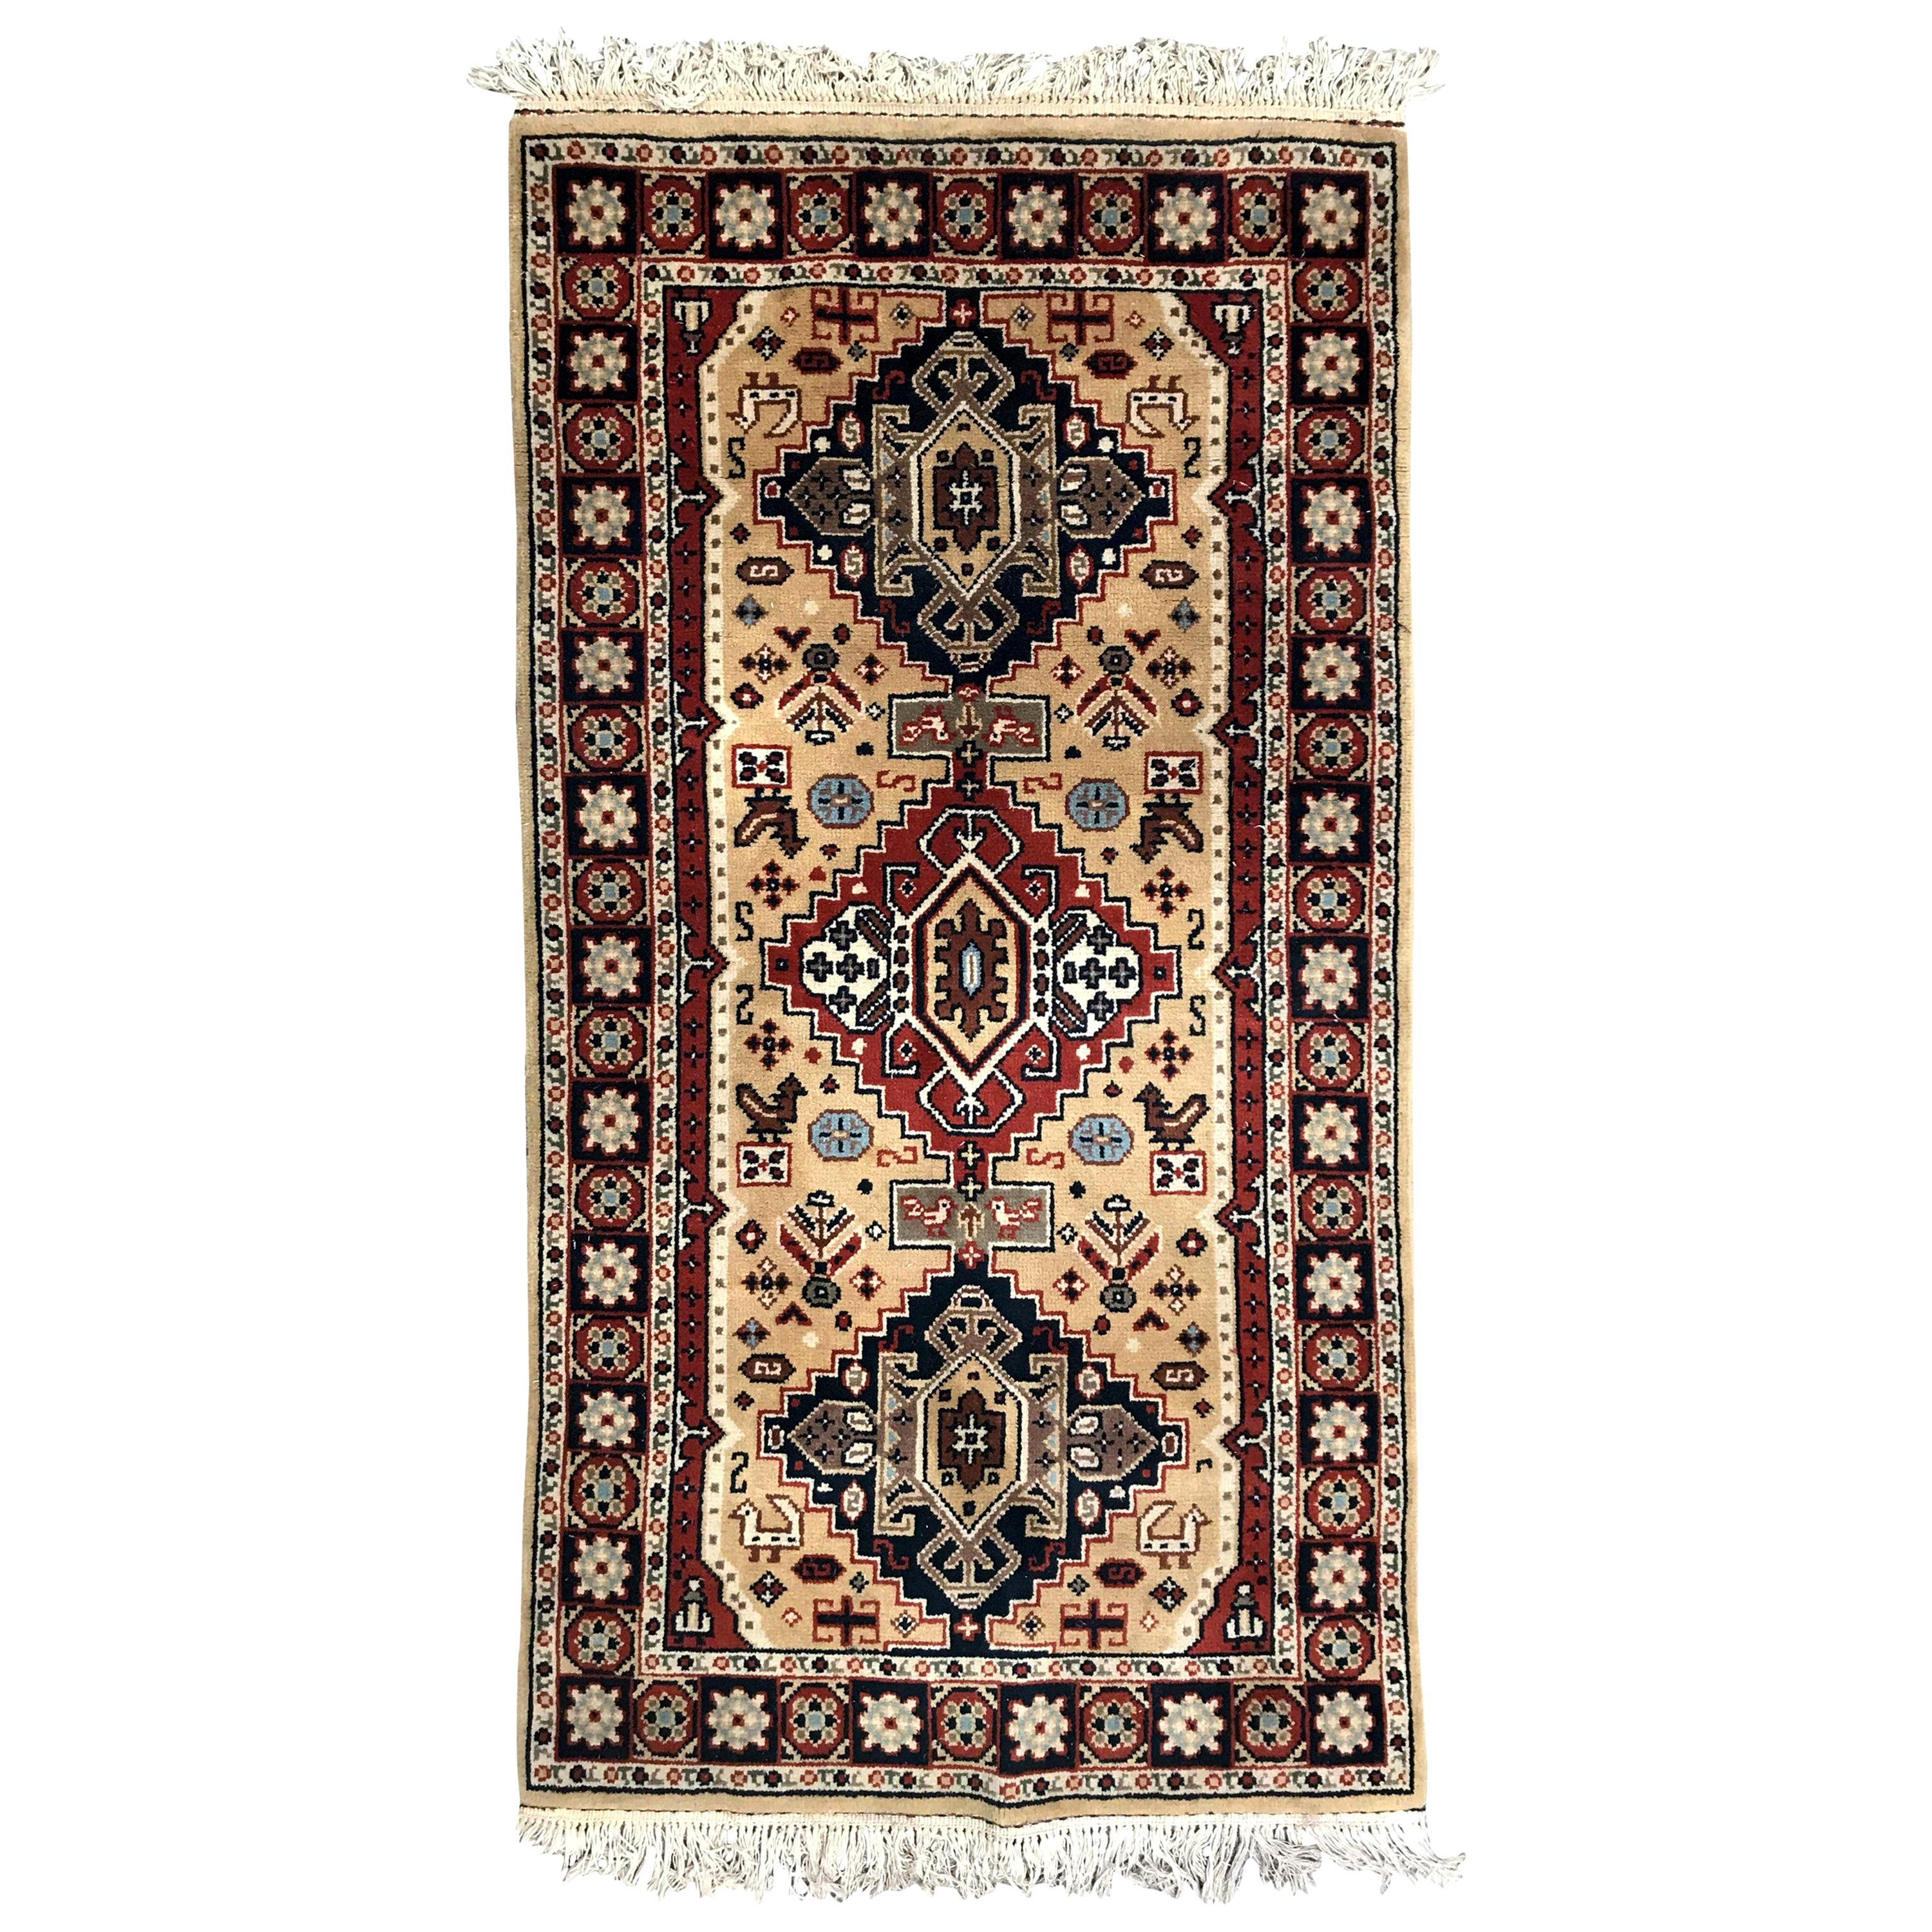 Schöner türkischer Sparta Teppich im Vintage-Stil